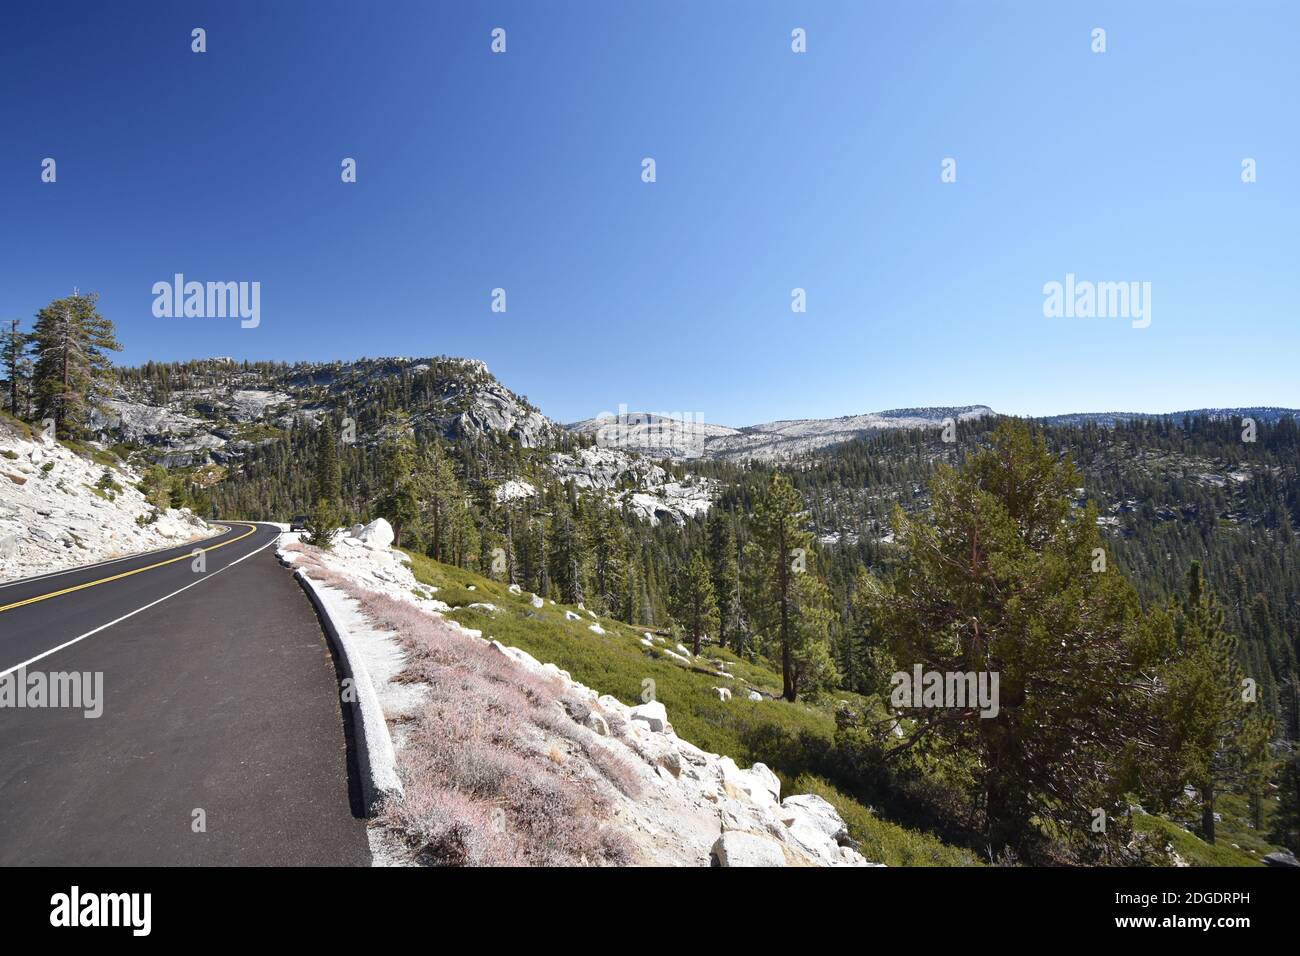 Tioga Pass Road traversant la chaîne de montagnes de la Sierra Nevada dans le parc national de Yosemite, en Californie. Ciel bleu clair, falaises de granit et arbres alpins. Banque D'Images